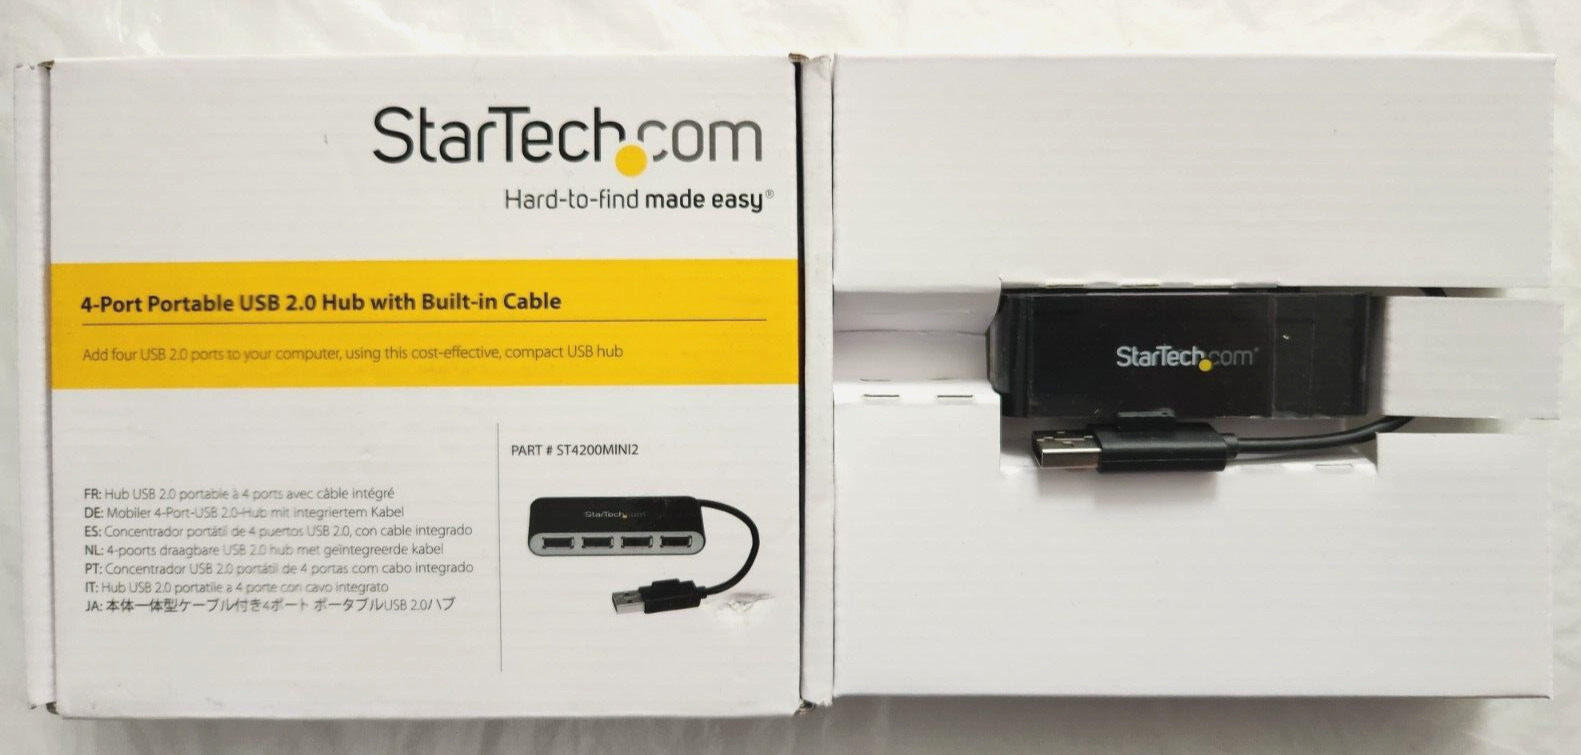 StarTech.com 4 Port USB 2.0 Hub Small Travel USB Hub #ST4200MINI2 - 